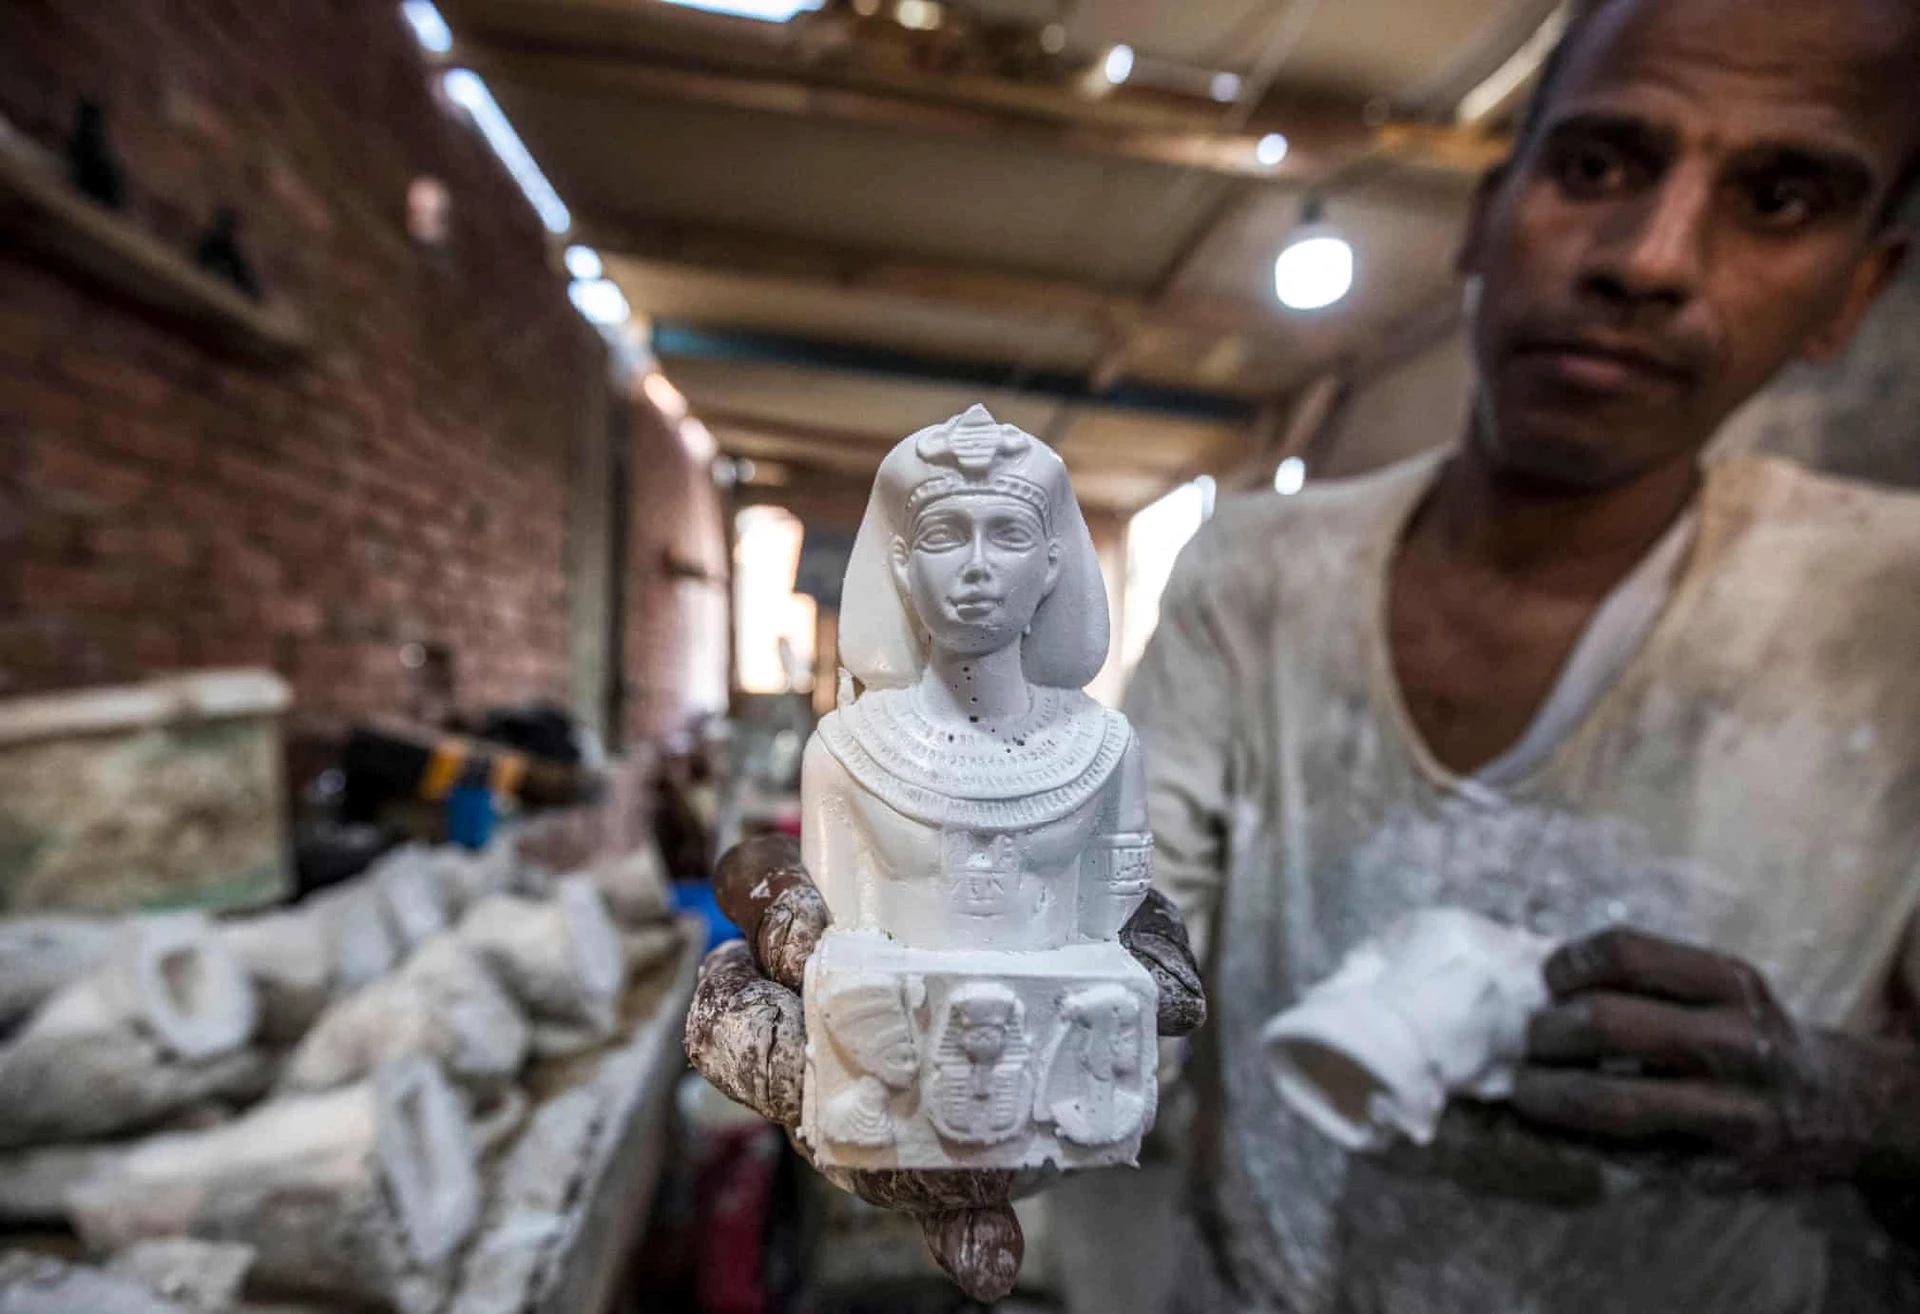 Vào năm 2015, Bộ Công nghiệp Ai Cập cấm "nhập khẩu hàng hóa và sản phẩm có tính chất nghệ thuật phổ biến", bao gồm cả các mô hình cổ vật nước này, như một biện pháp để bảo vệ ngành thủ công nội địa trước sự cạnh tranh về giá của các sản phẩm nước ngoài.